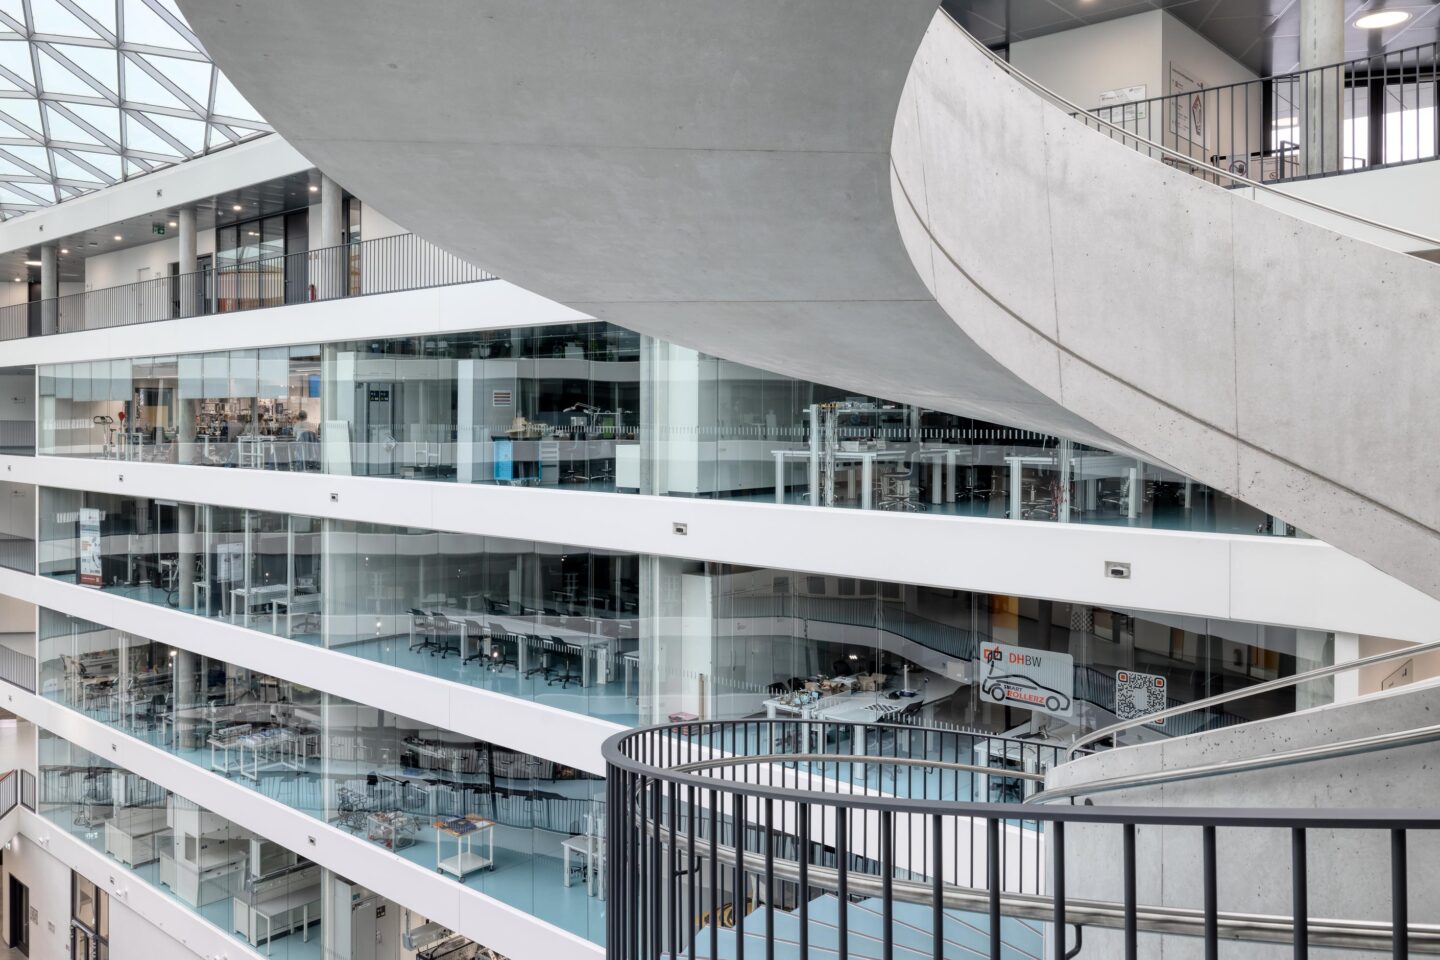 DHBW Stuttgart, Fakultät Technik | Blick vom Atrium vorbei an der Wendeltreppe auf die Glasfronten der Räume